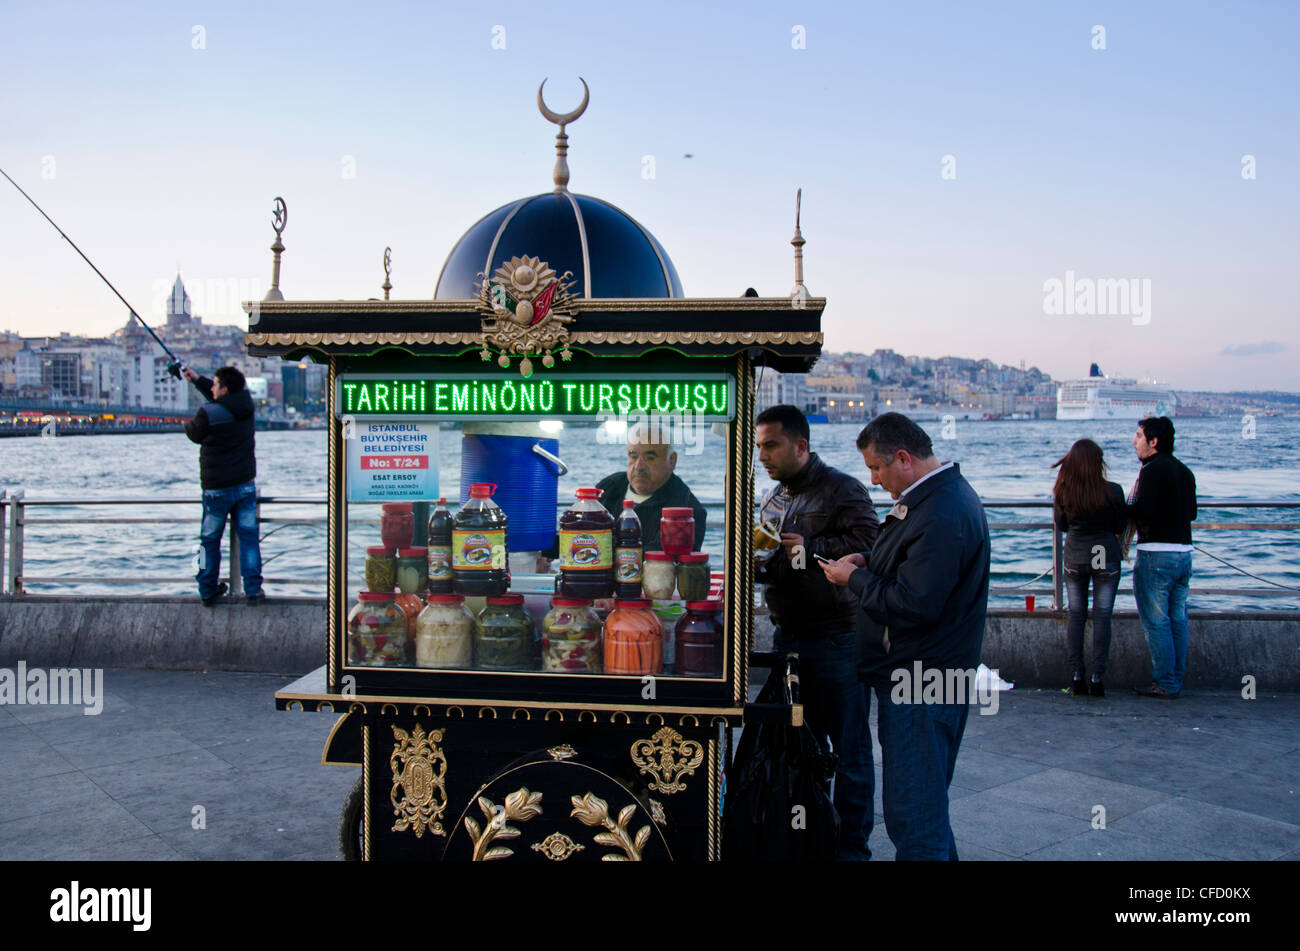 Lebensmittel-Kiosk am Goldenen Horn von der Galata-Brücke, befindet sich im Stadtteil Eminönü von Istanbul, Türkei. Stockfoto